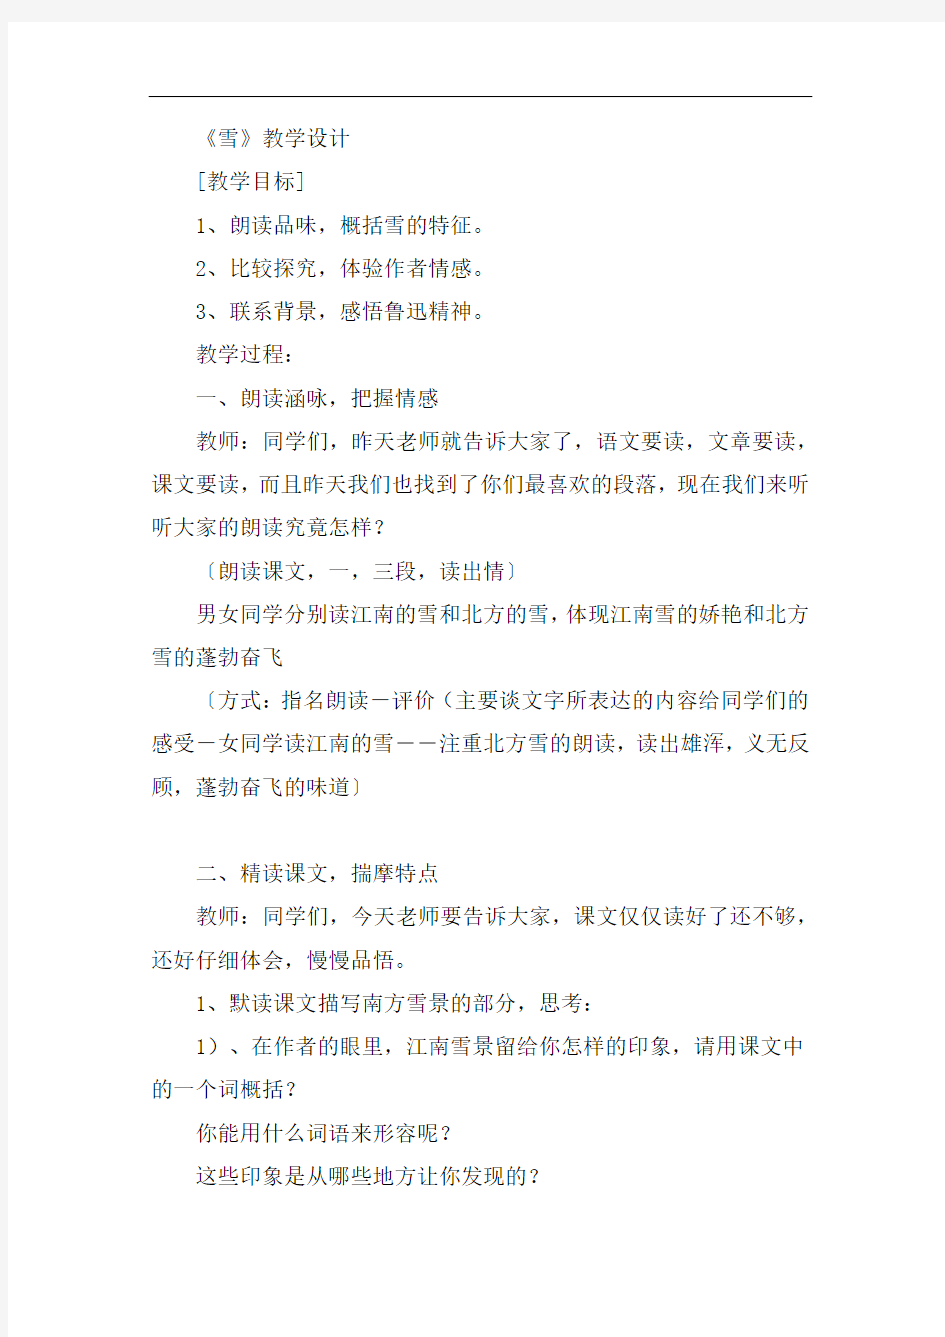 初中语文_6 雪教学设计学情分析教材分析课后反思